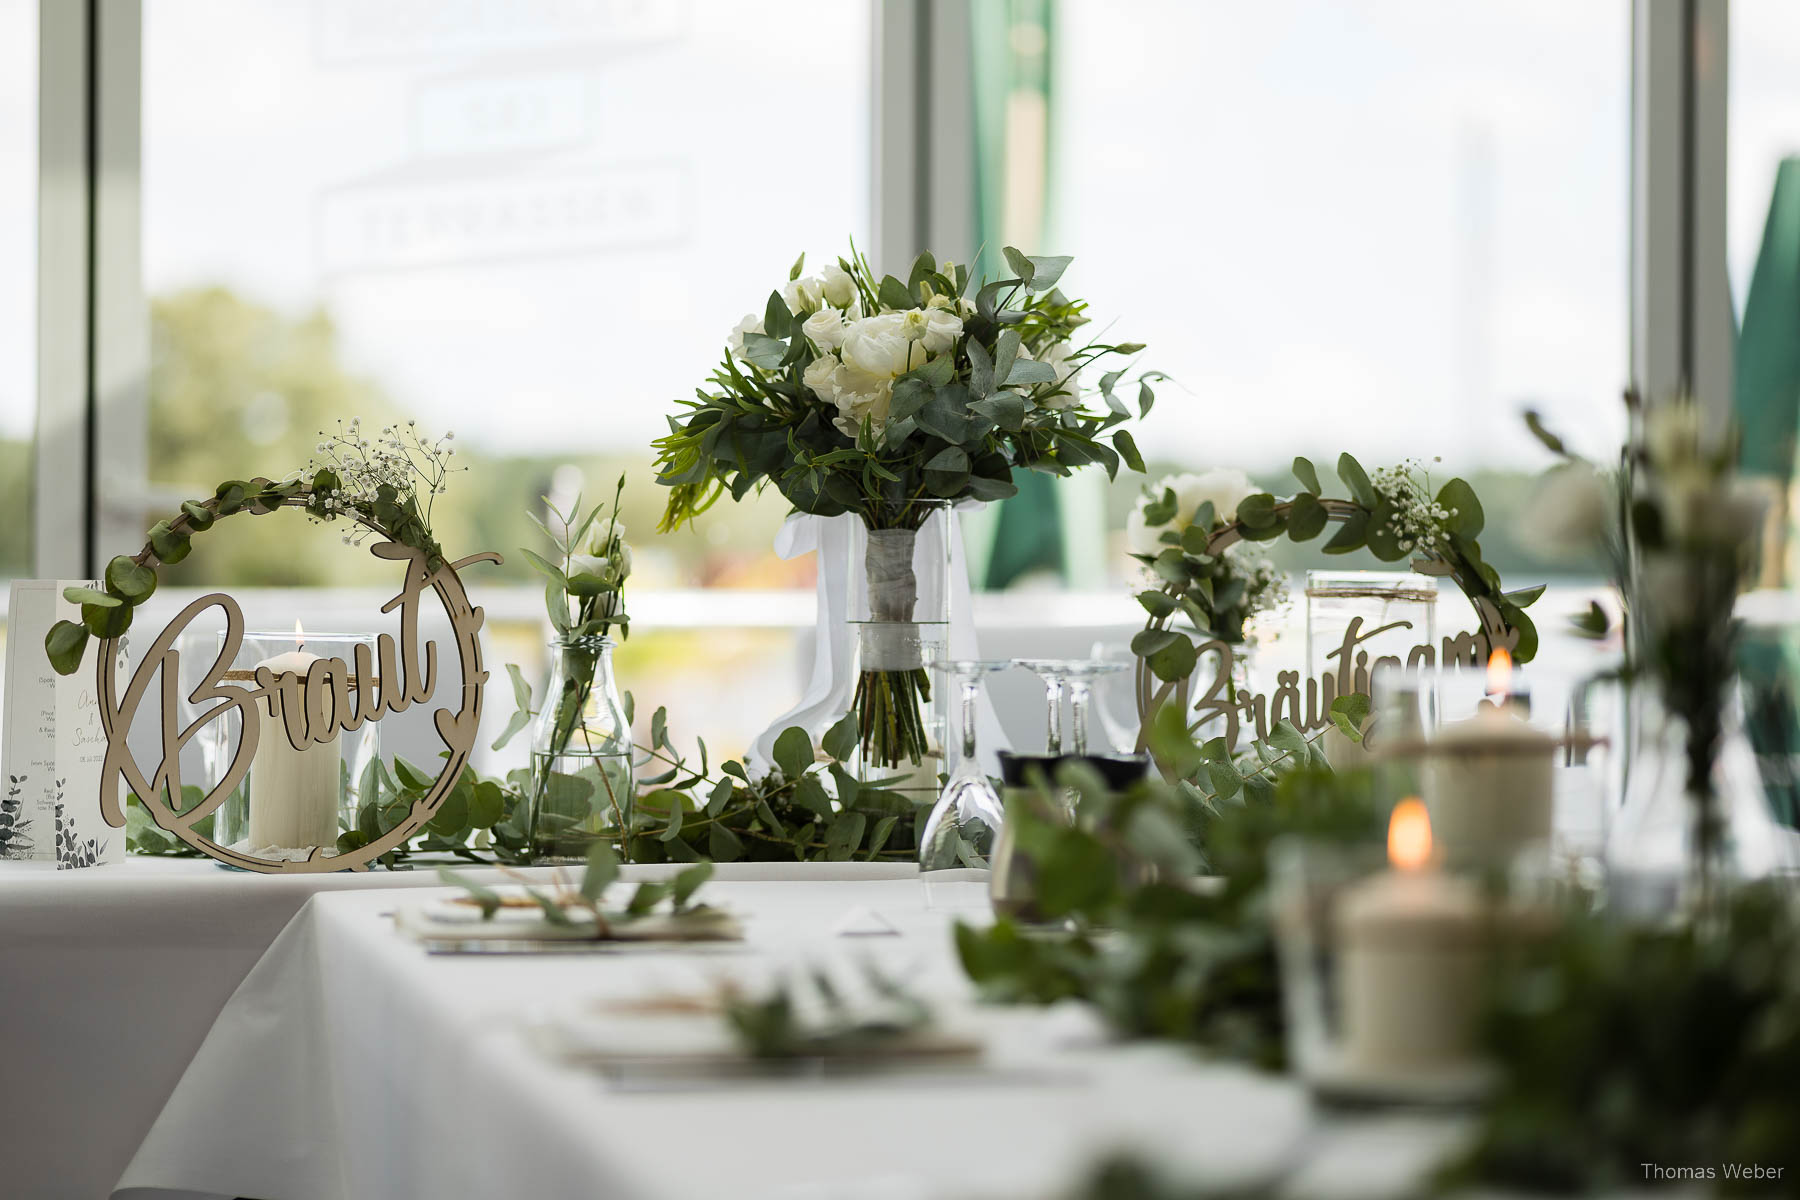 Hochzeitsempfang an den Hooksieler Skiterrassen, Hochzeitsfotograf Thomas Weber aus Oldenburg